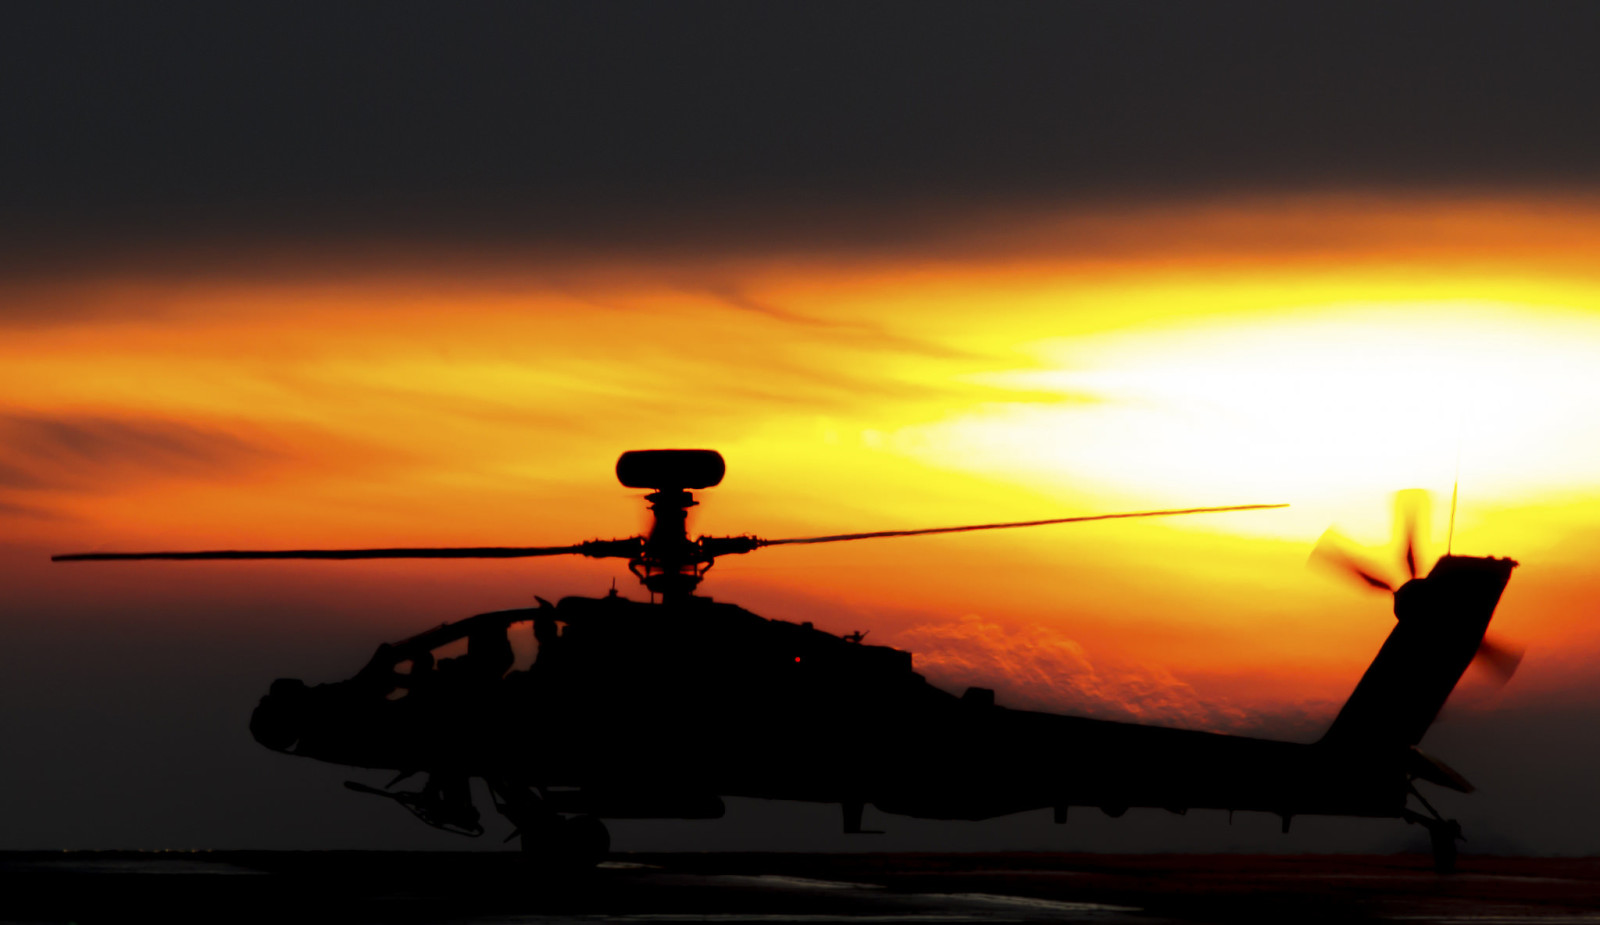 เฮลิคอปเตอร์, ช็อก, อาปาเช่, AH-64, หลัก, "อาปาเช่"